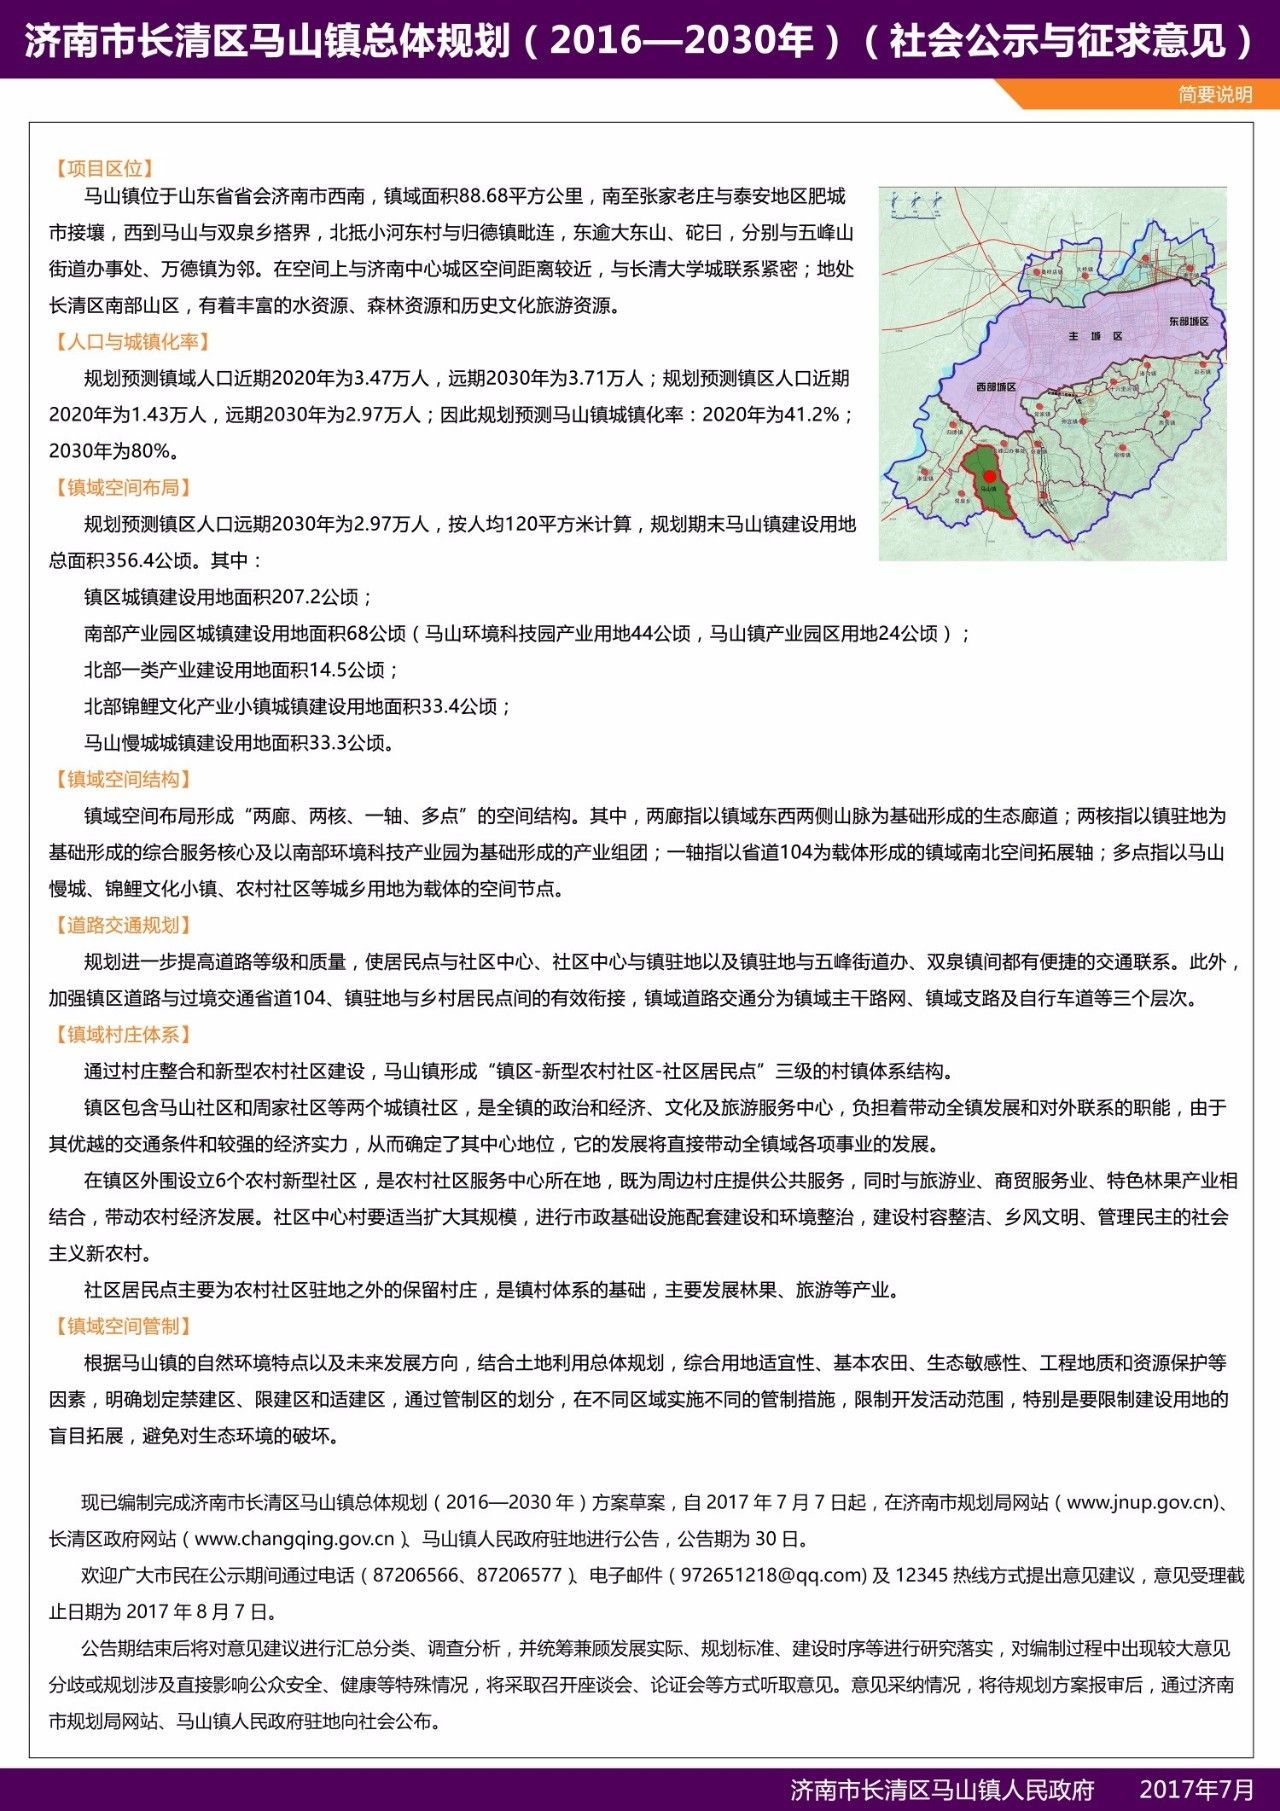 《济南市长清区马山镇总体规划》通过专家论证